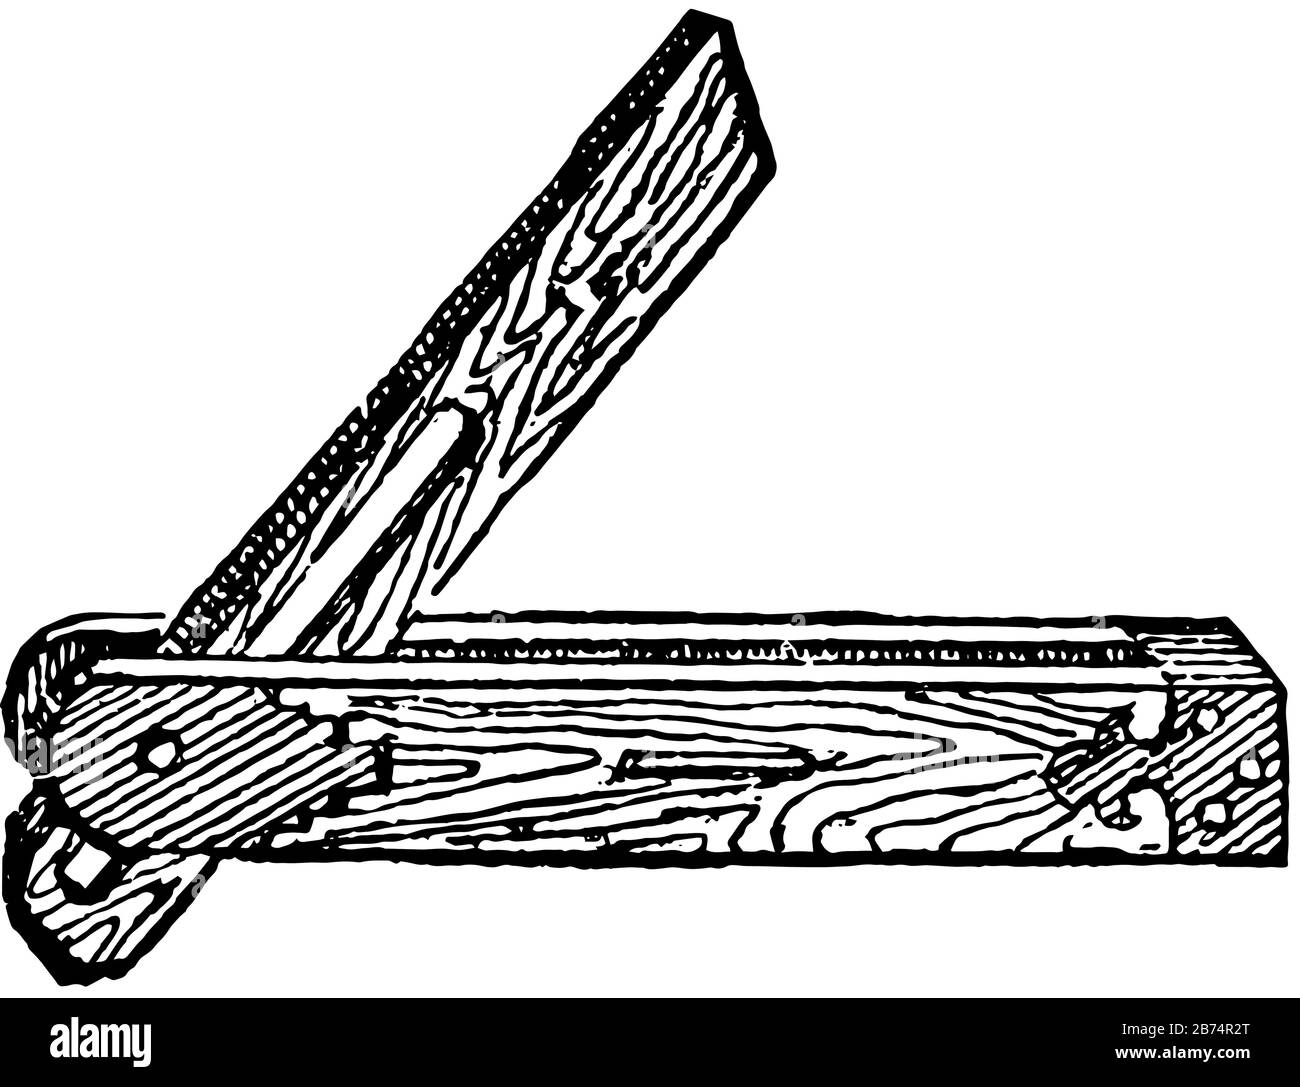 Questa illustrazione rappresenta Lo Smusso dove le superfici di lavoro alla stessa inclinazione, disegno di linea vintage o illustrazione di incisione. Illustrazione Vettoriale